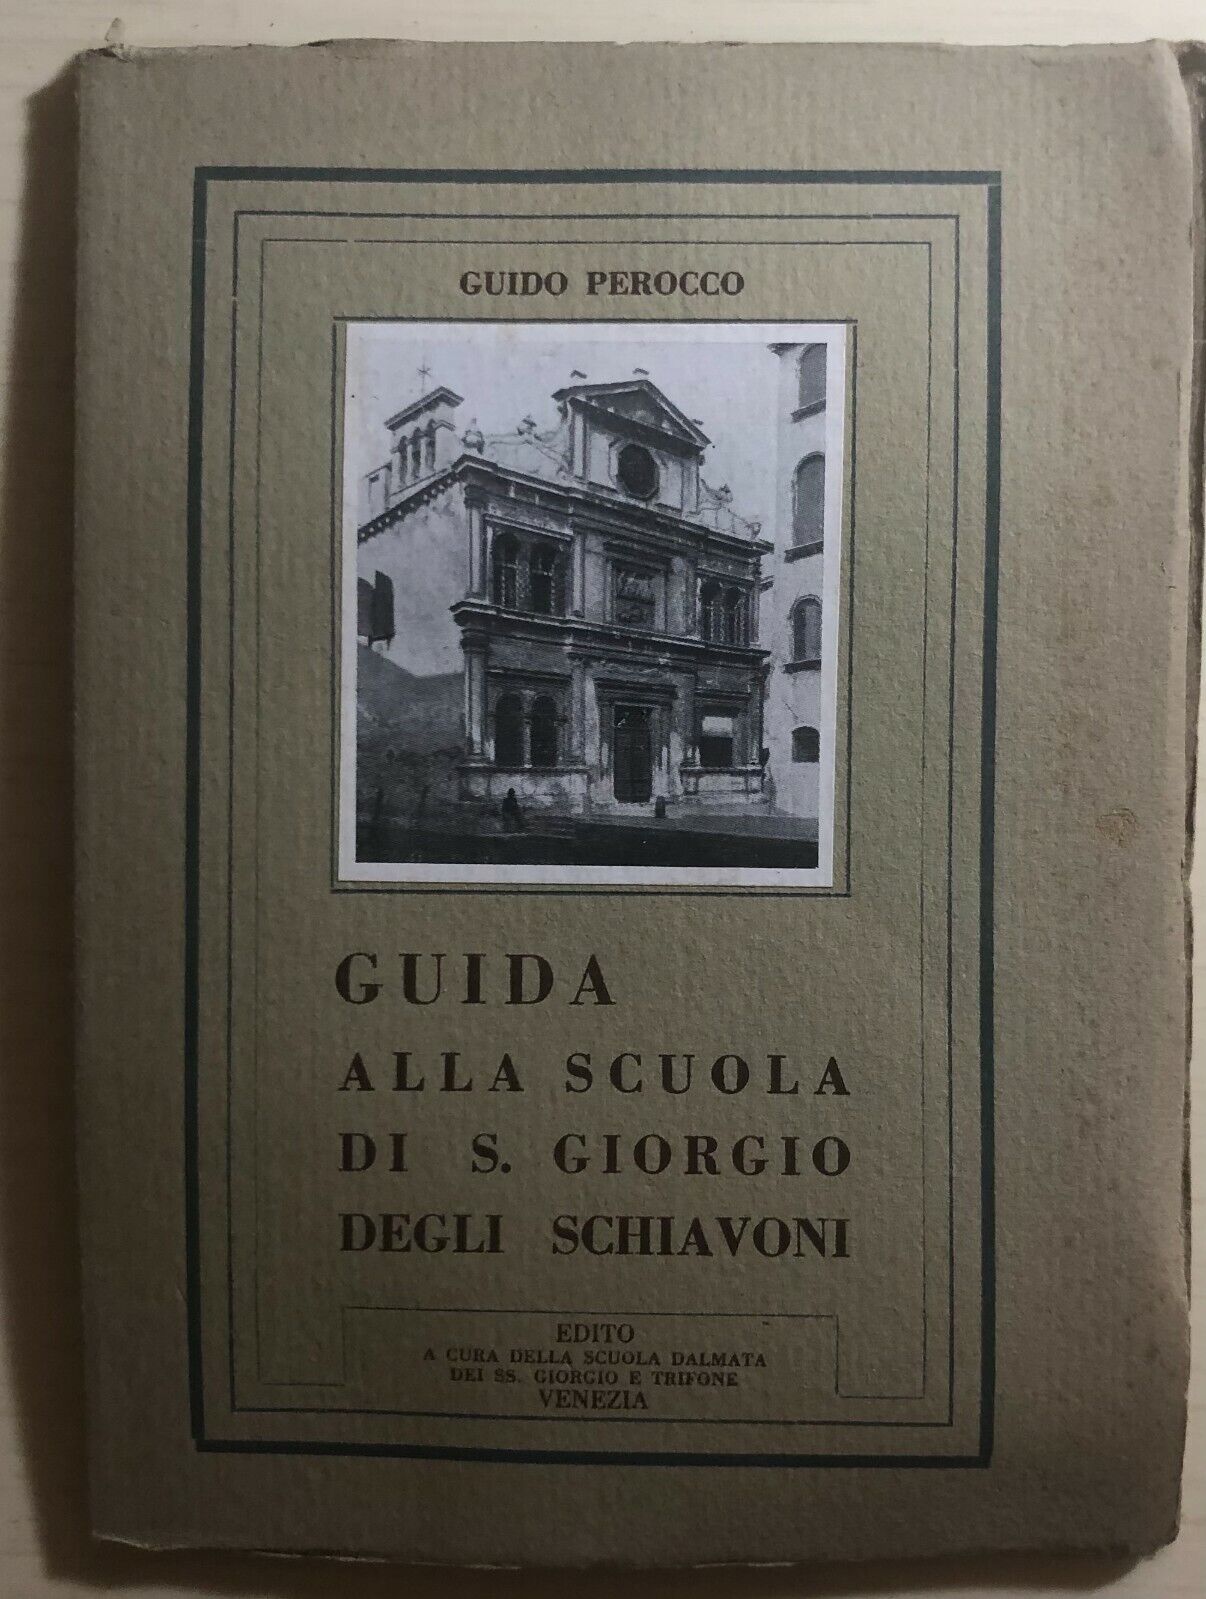 Guida alla scuola di S. Giorgio degli schiavoni di Guido Perocco,  1952,  Scuola